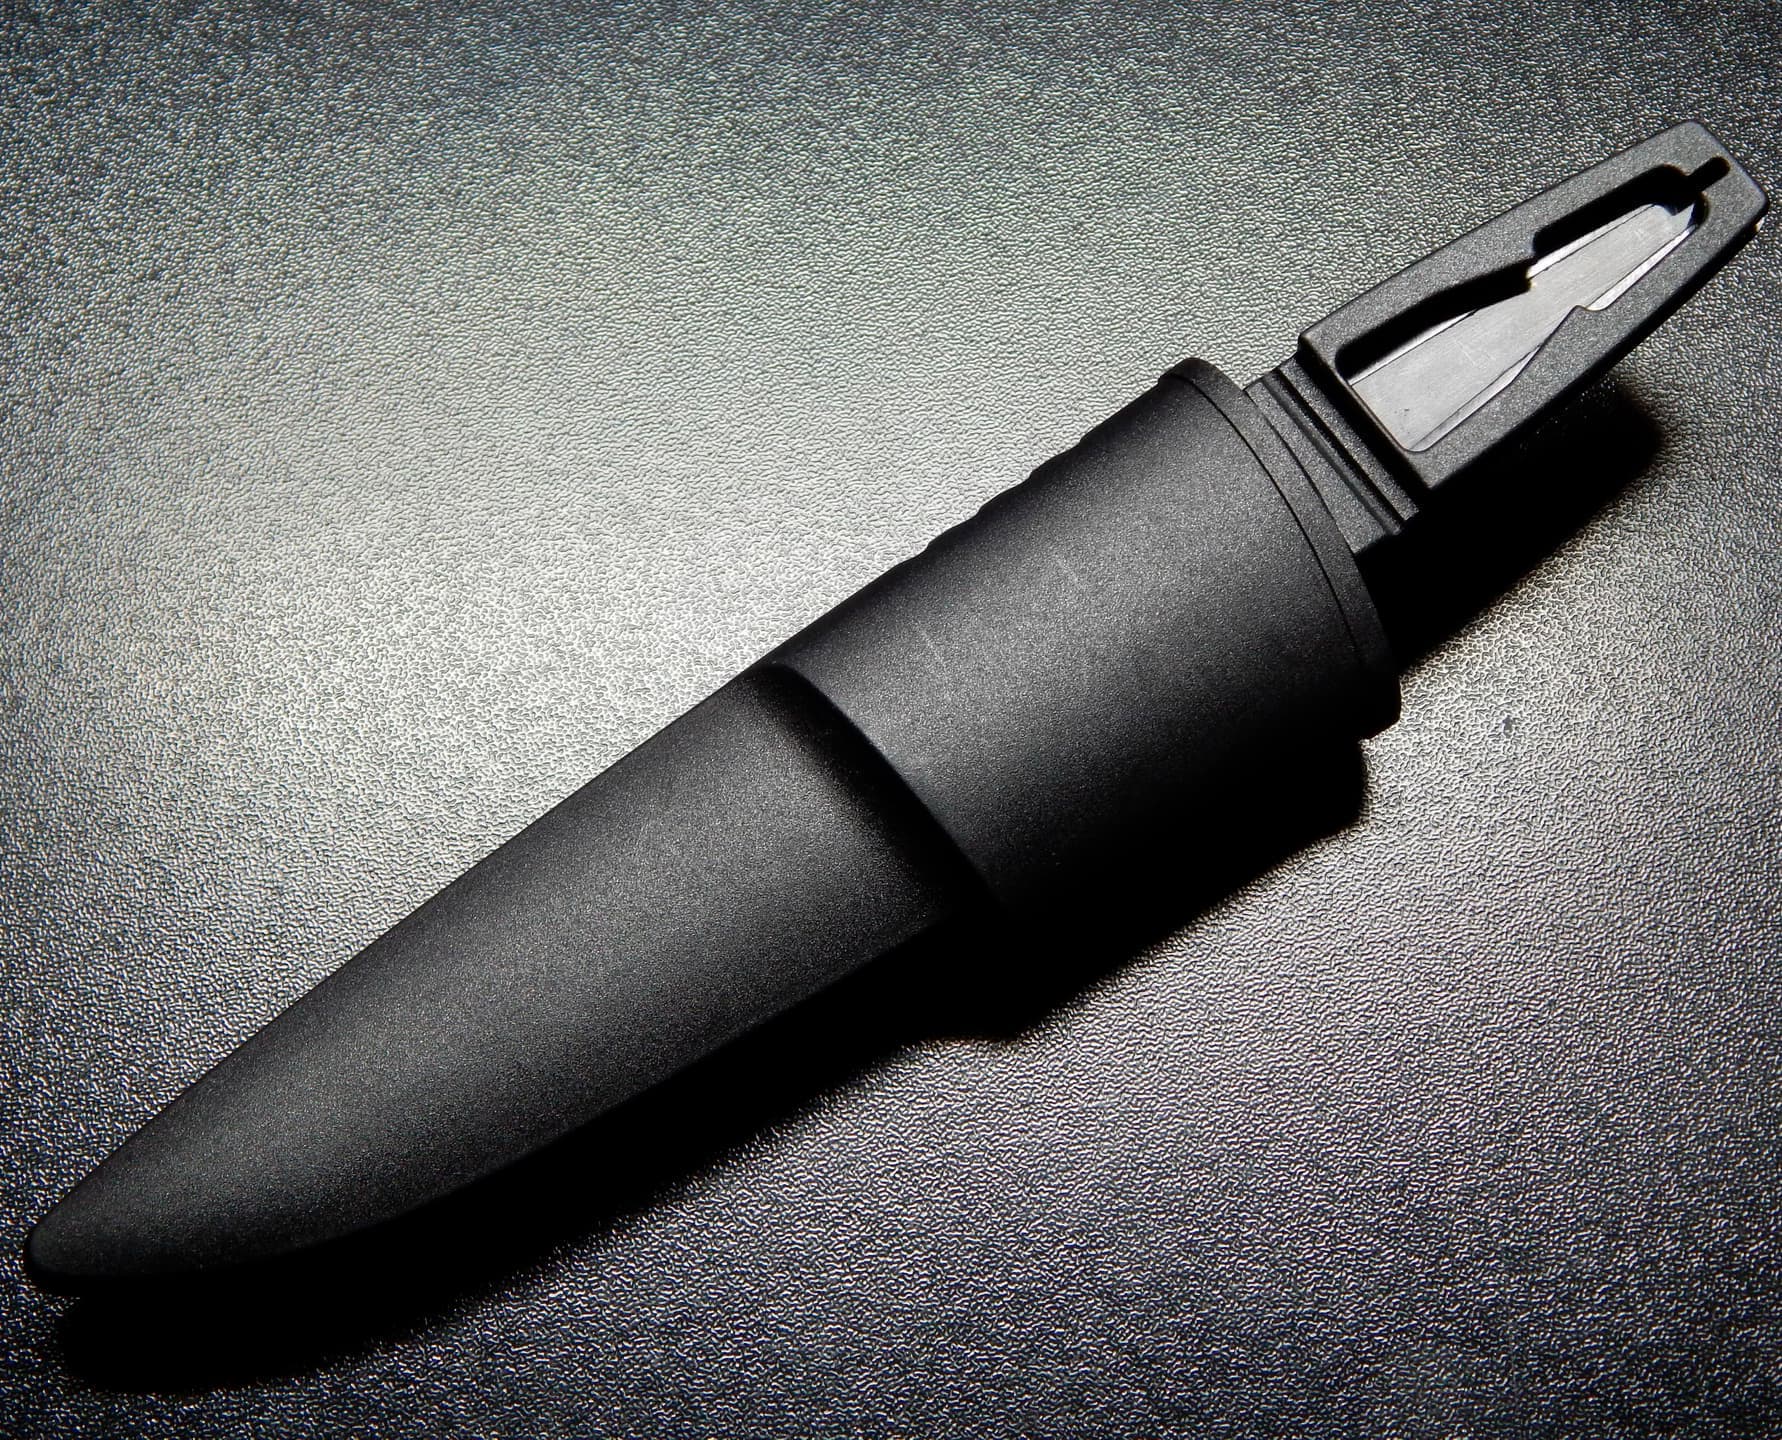 Нож с ножнами Skrab 26818 универсальный, плавающий, SS / 225 мм.